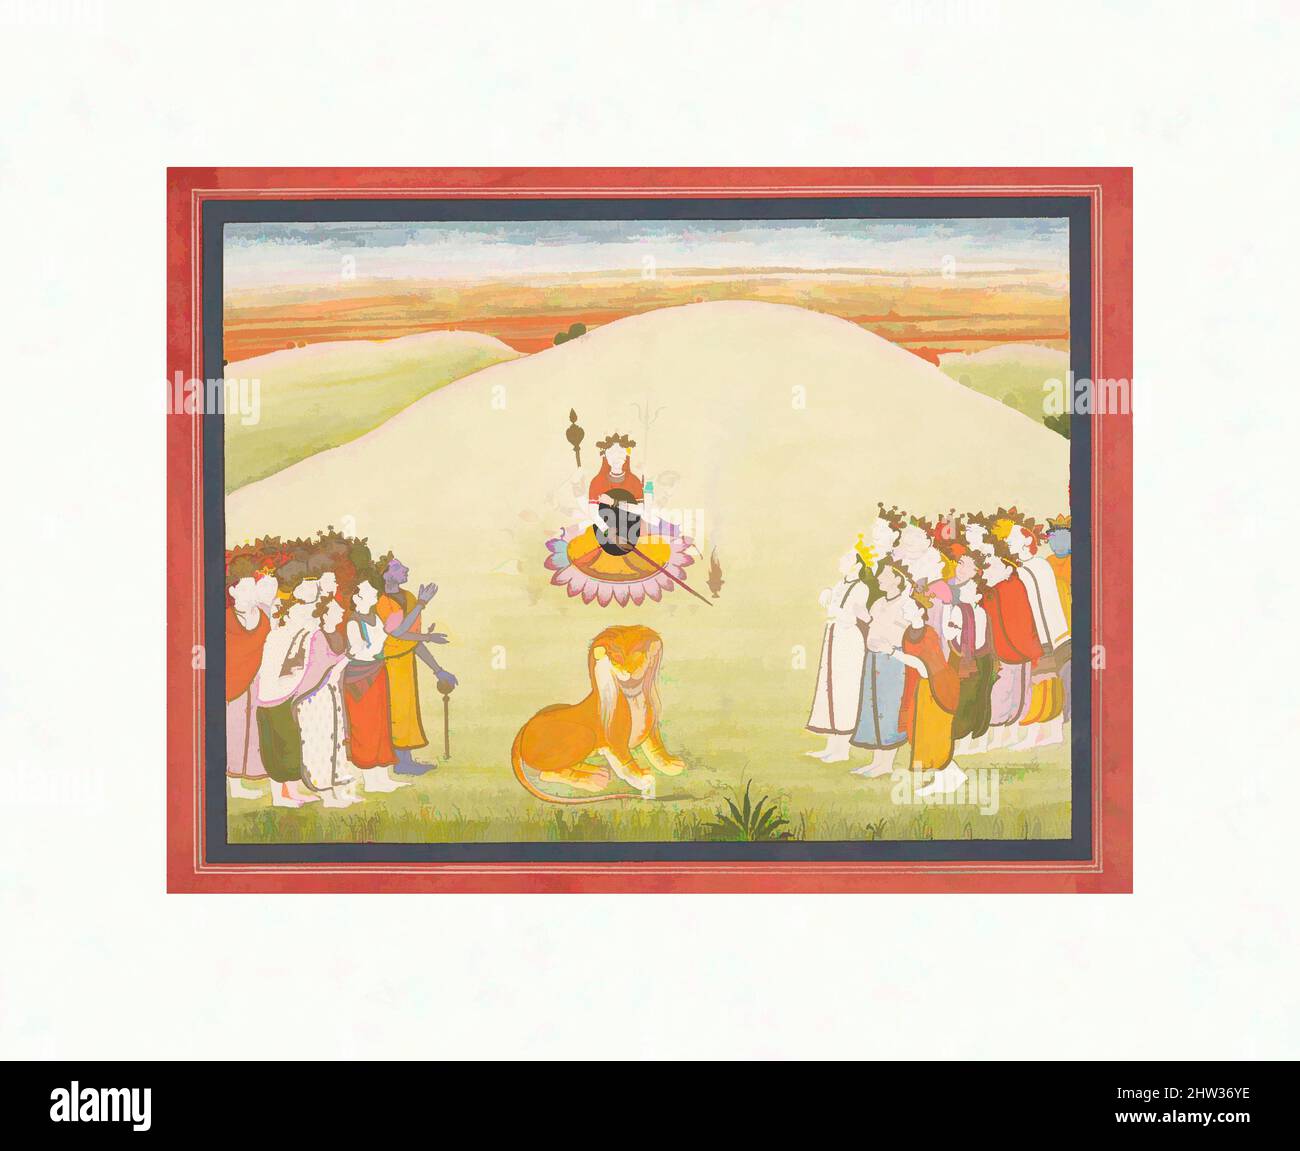 Arte ispirata alla creazione di Durga: Pagina da un disperso Markandeya Purana: (Storie del Sage Markandeya), ca. 1810–20, India (Punjab Hills, Guler), inchiostro e acquerello opaco sulla carta, all'interno dei bordi: 6 7/8 x 9 1/8 pollici (17,5 x 23,2 cm), dipinti, Durga è stato creato dagli dei, opere classiche modernizzate da Artotop con un tuffo di modernità. Forme, colore e valore, impatto visivo accattivante sulle emozioni artistiche attraverso la libertà delle opere d'arte in modo contemporaneo. Un messaggio senza tempo che persegue una nuova direzione selvaggiamente creativa. Artisti che si rivolgono al supporto digitale e creano l'NFT Artotop Foto Stock